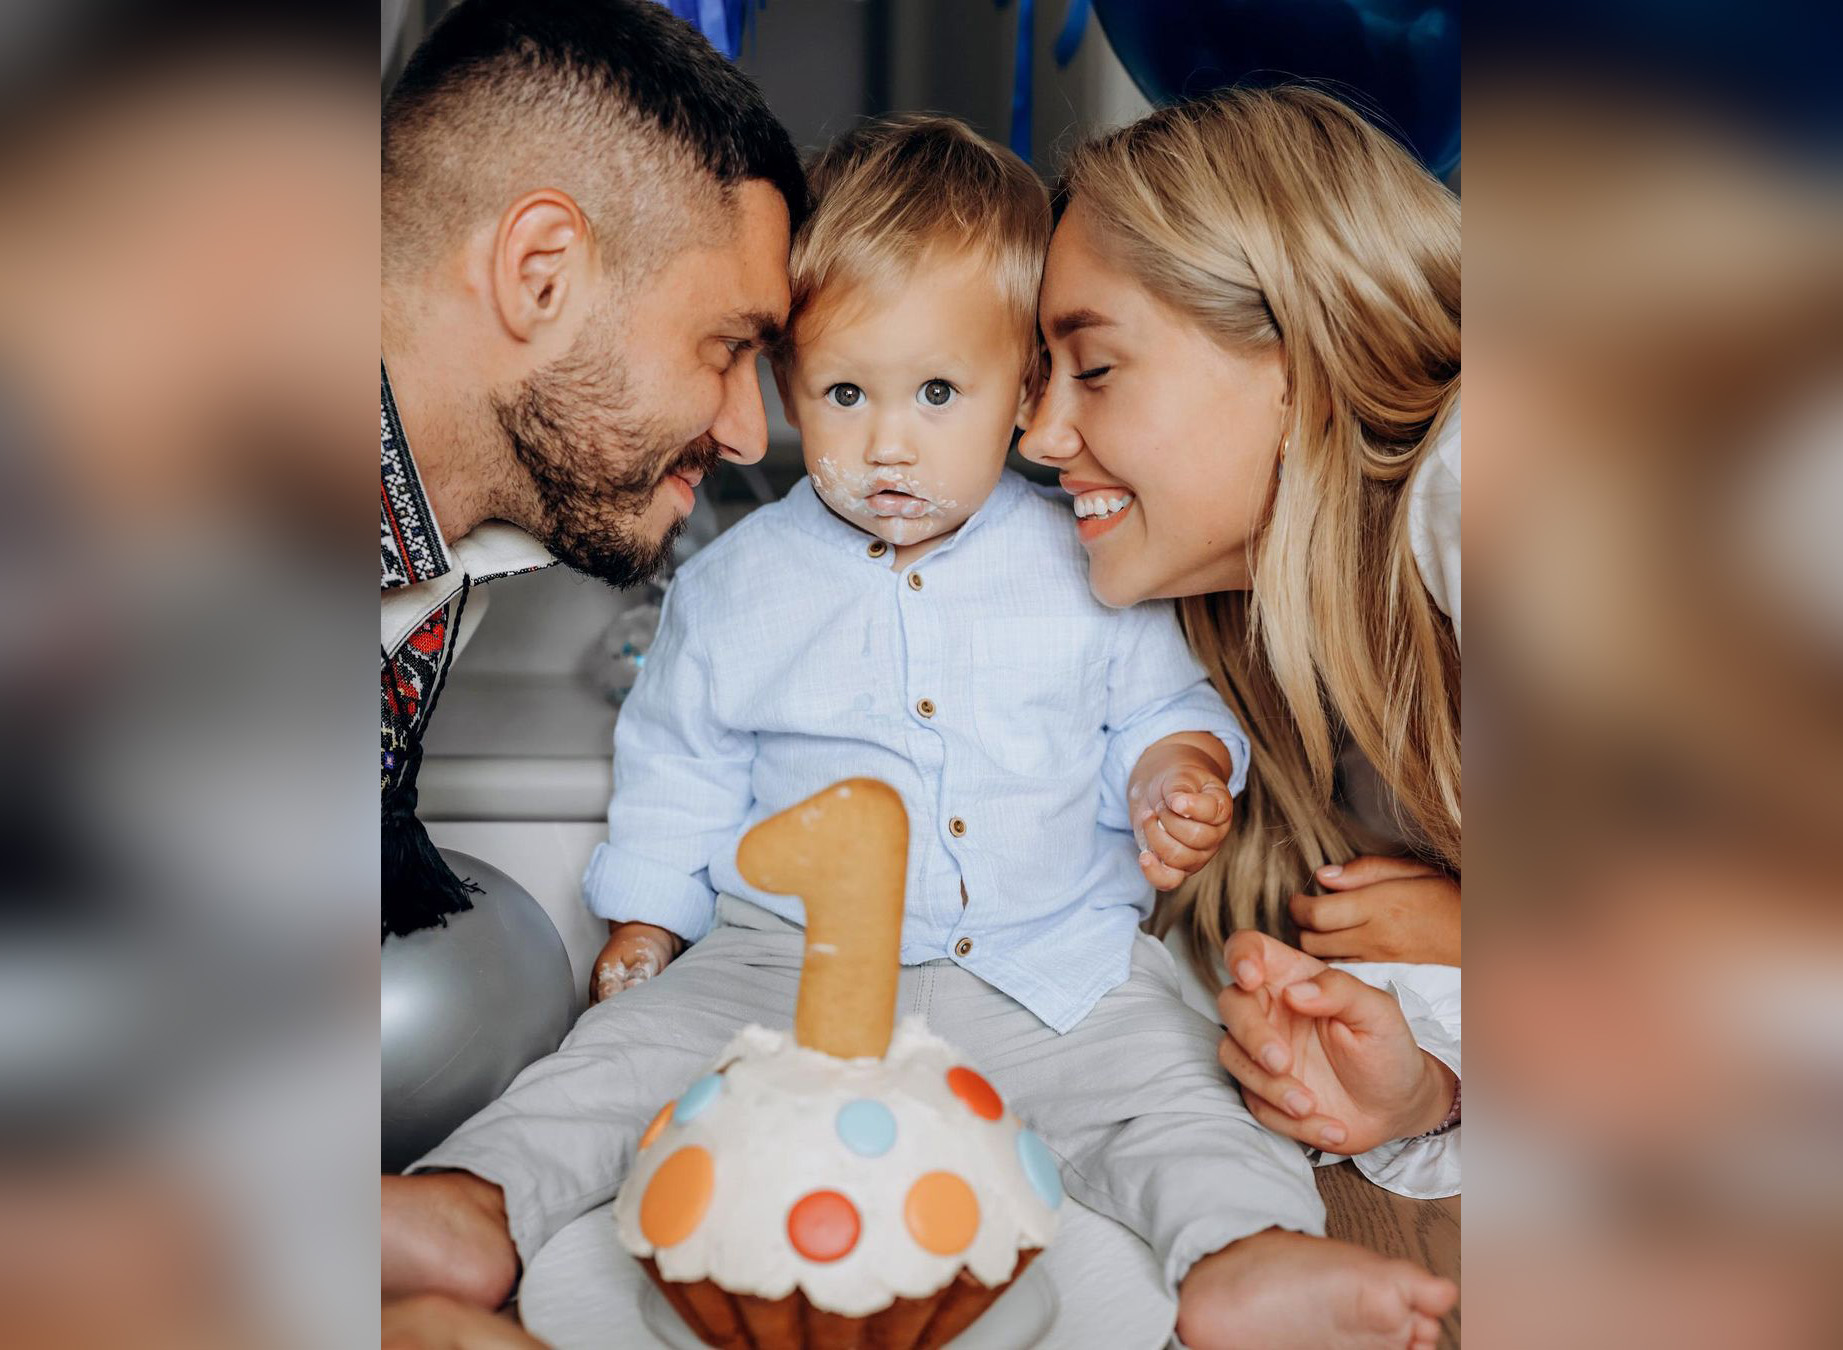 Нікіта Добринін та Даша Квіткова відзначають день народження сина. Фото: Instagram.com/nikitadobrynin/